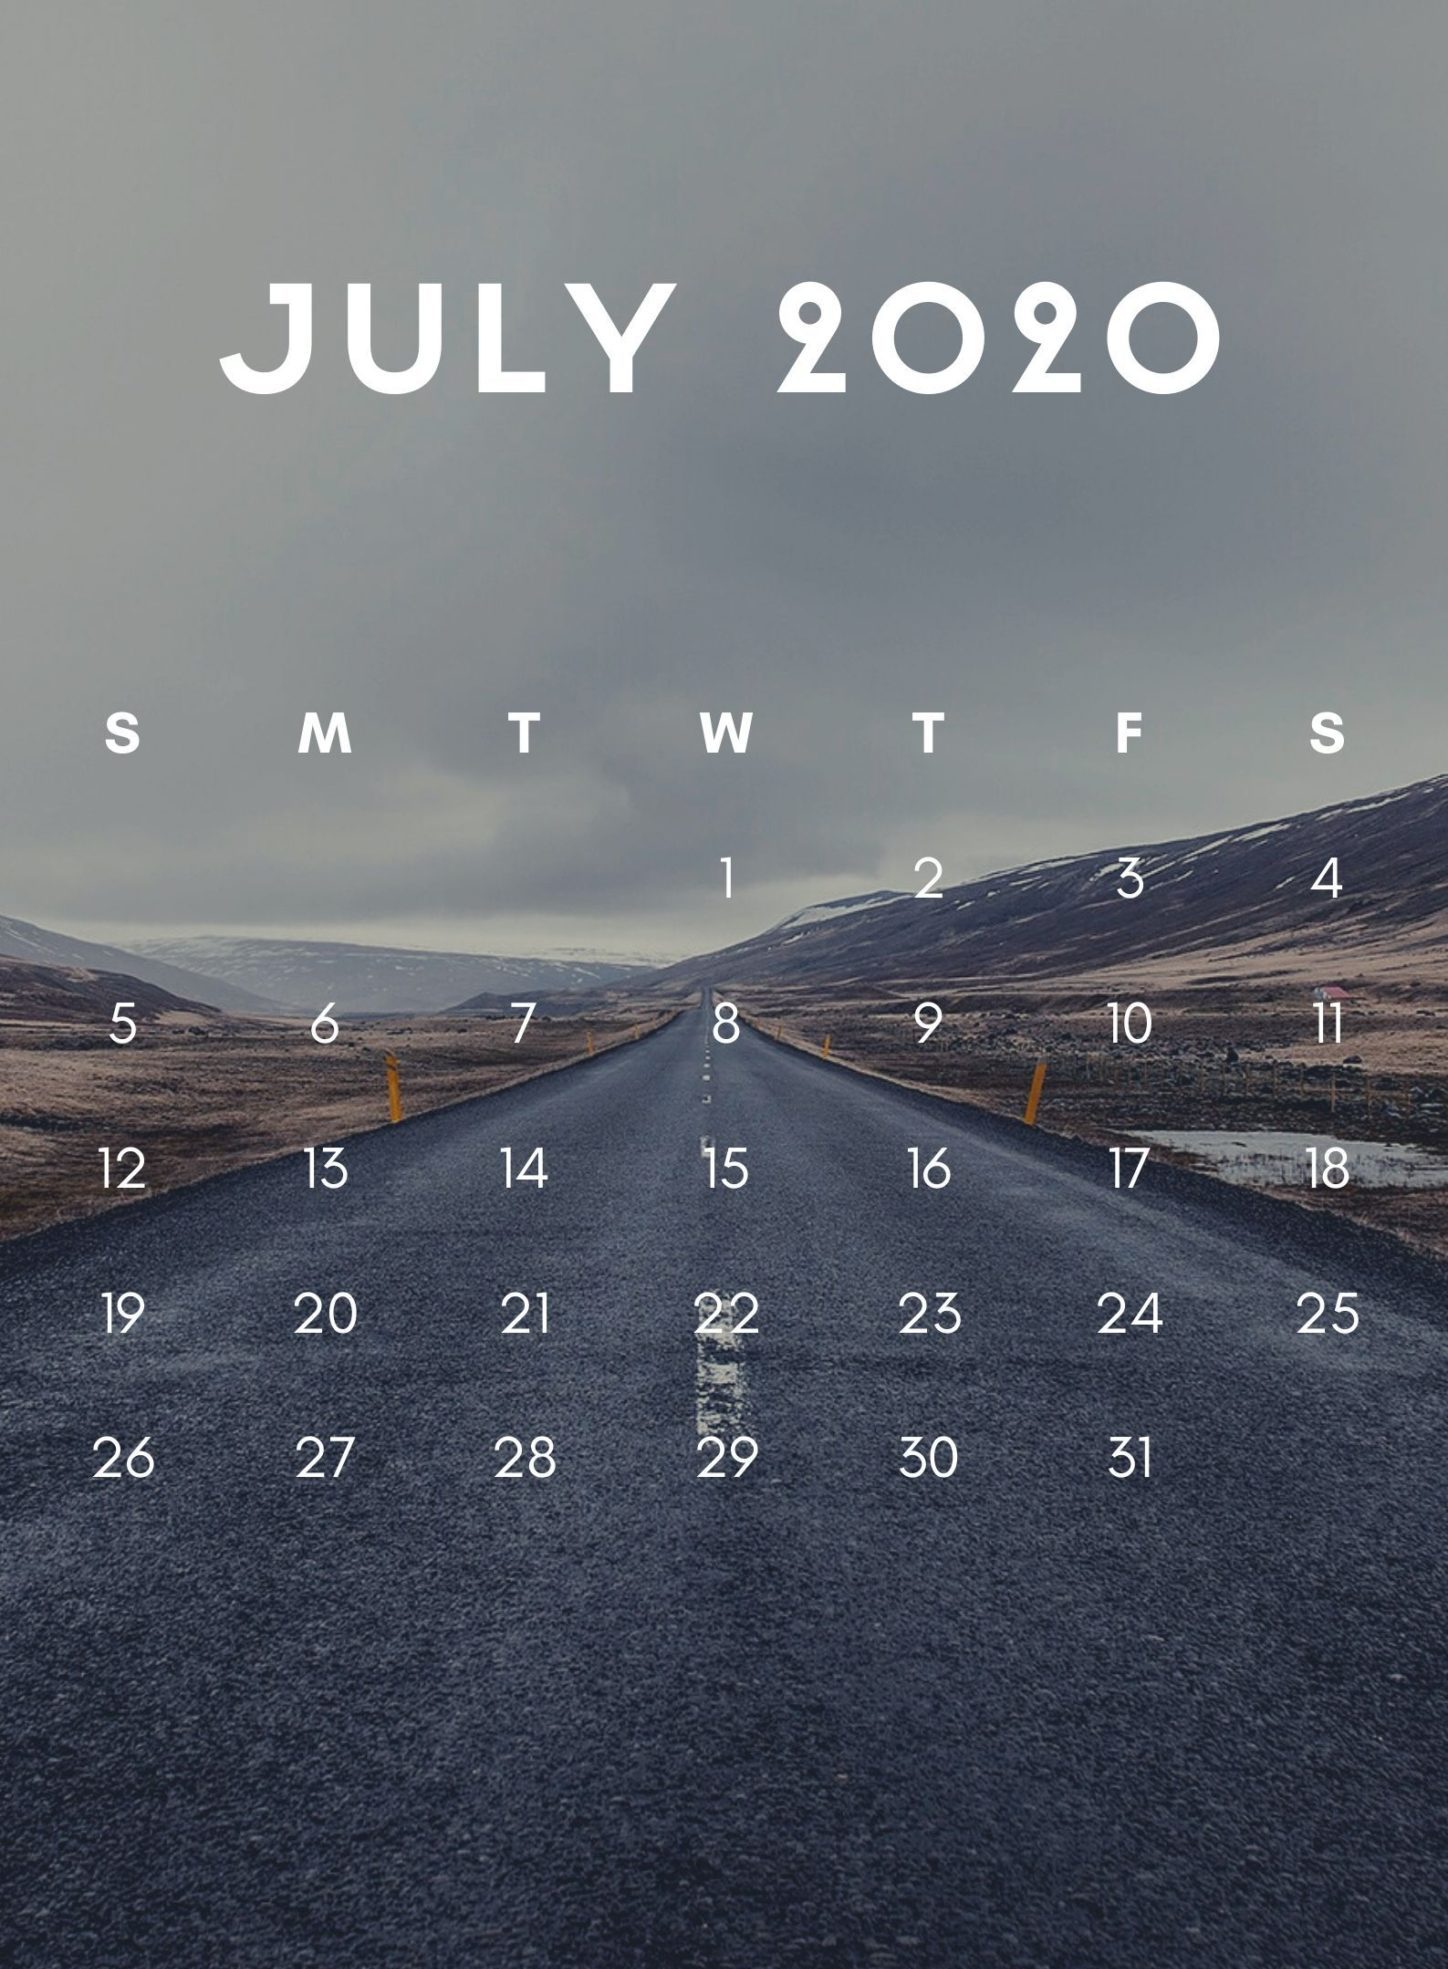 iPhone July 2020 Calendar Wallpaper